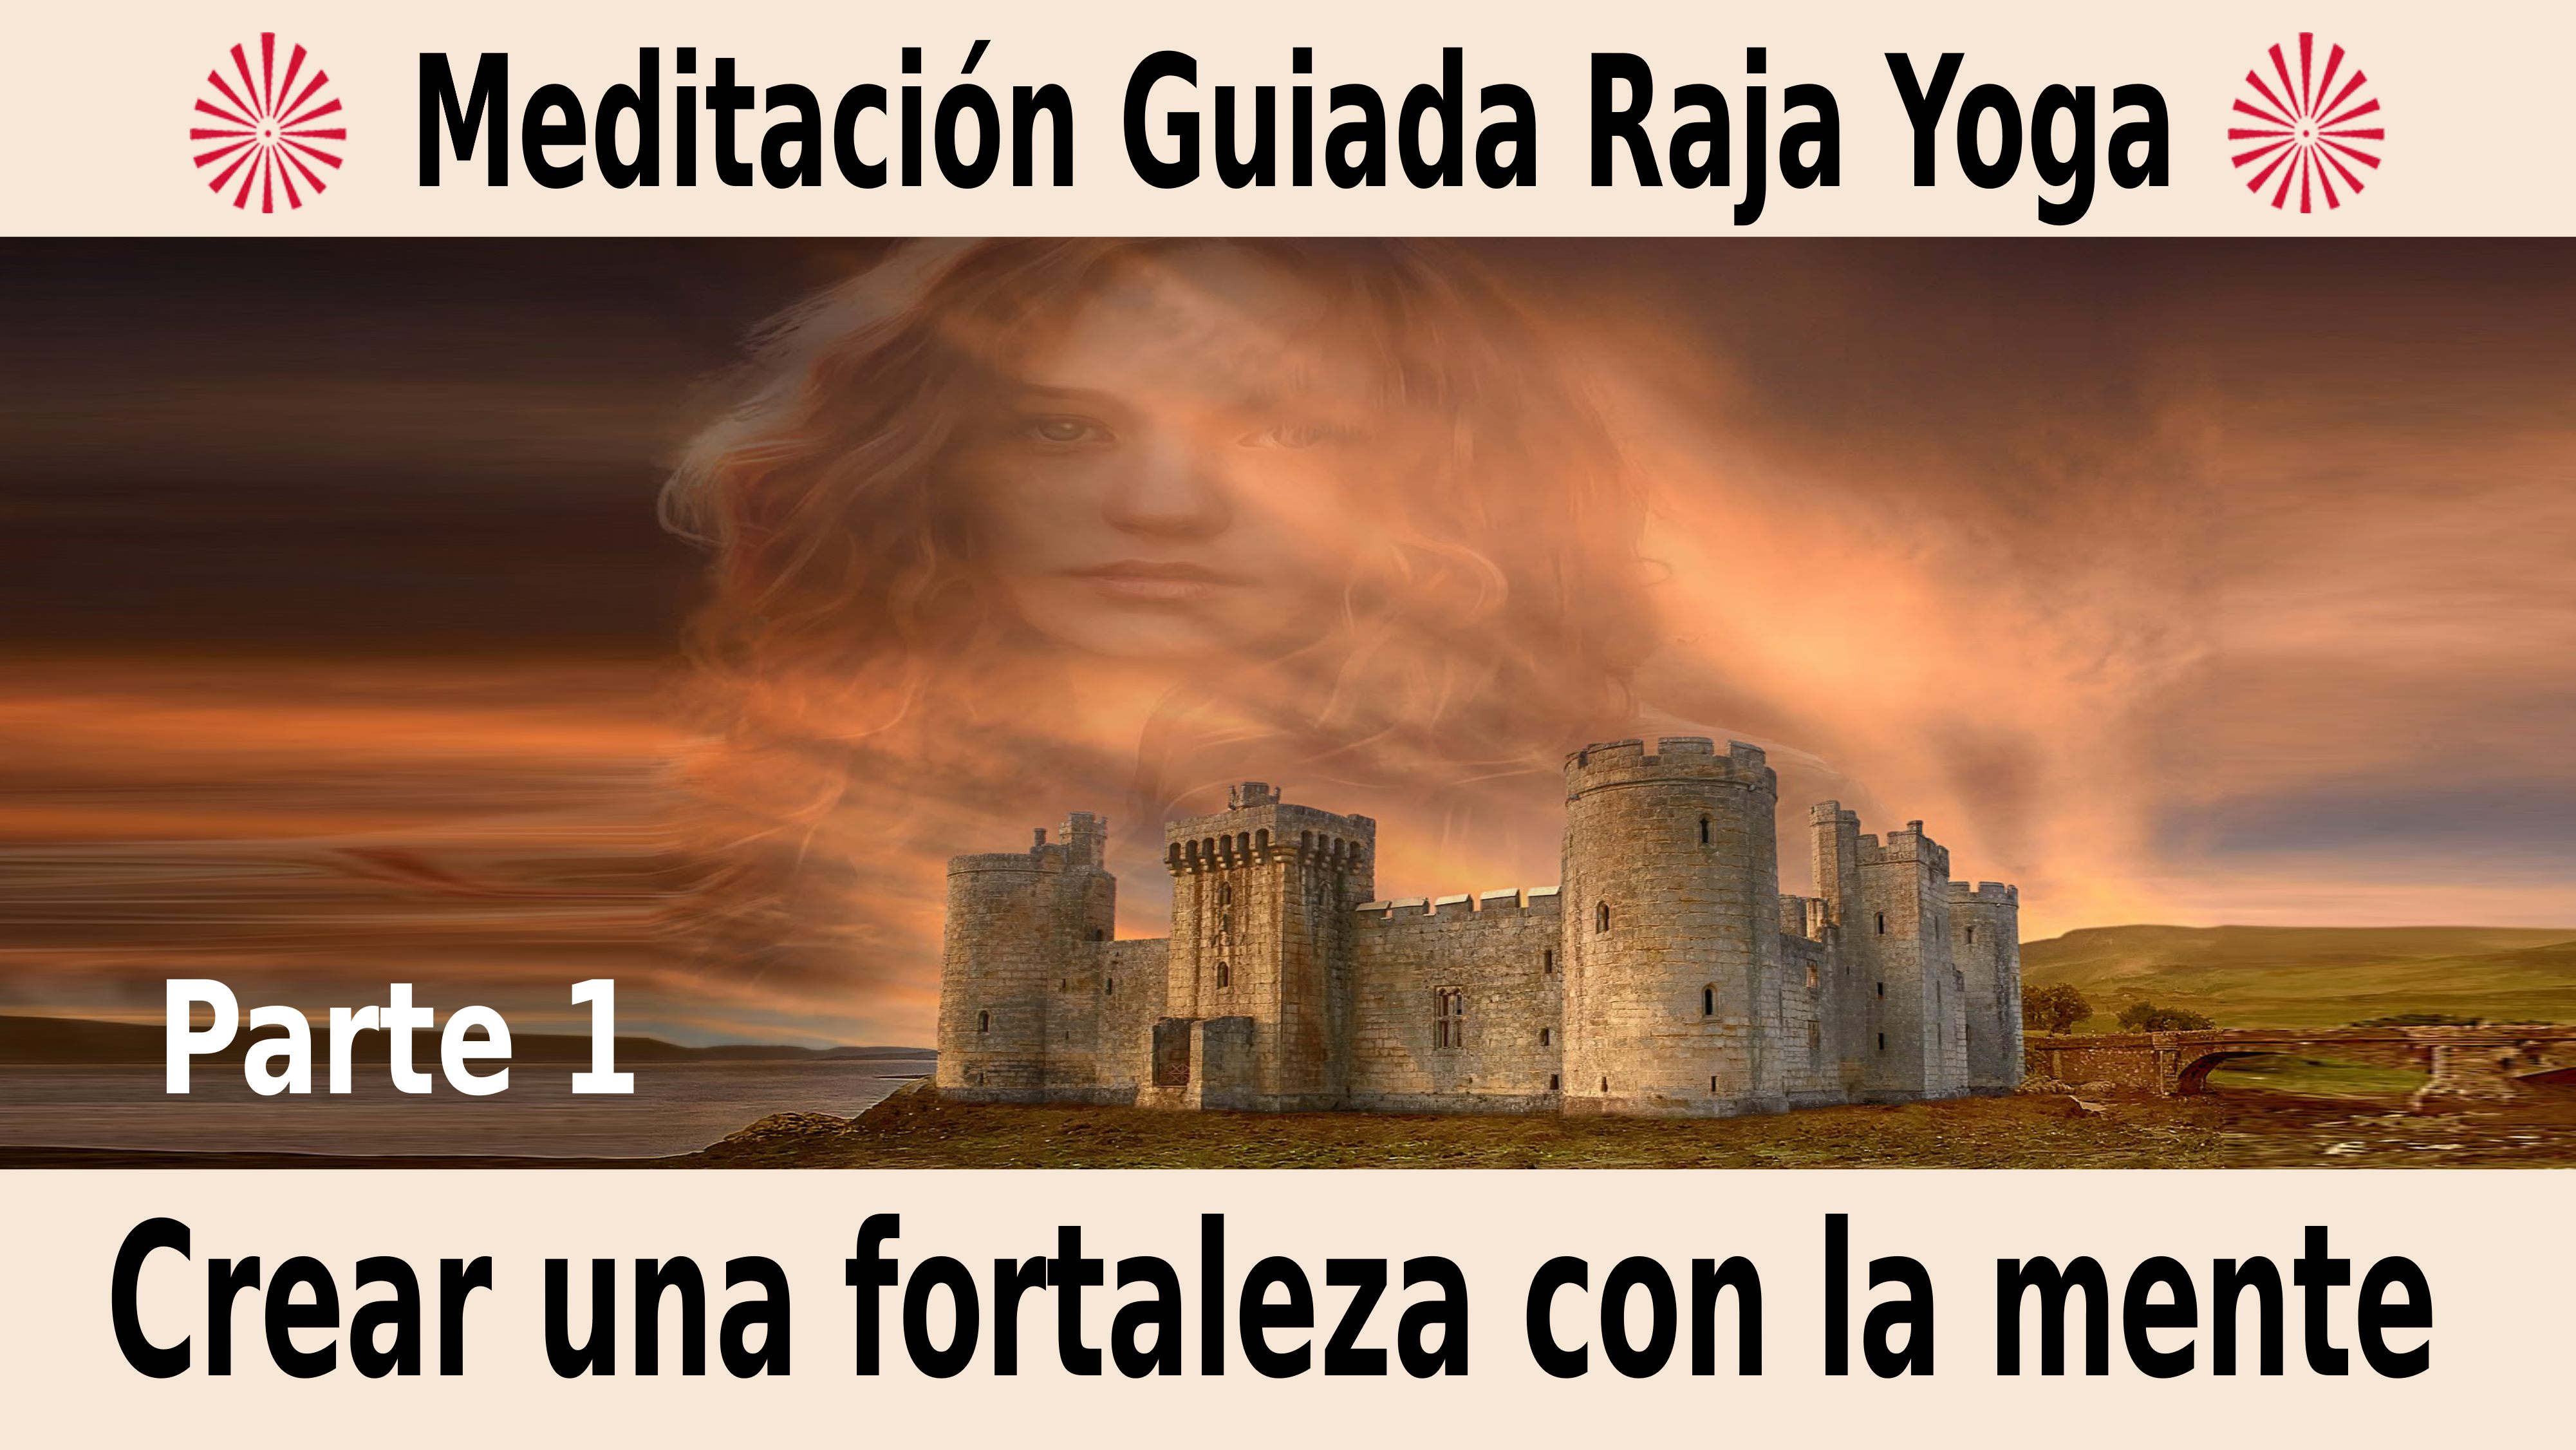 Meditación Raja Yoga Crear una fortaleza con la mente (1ª parte) (3 Noviembre 2020) On-line desde Madrid